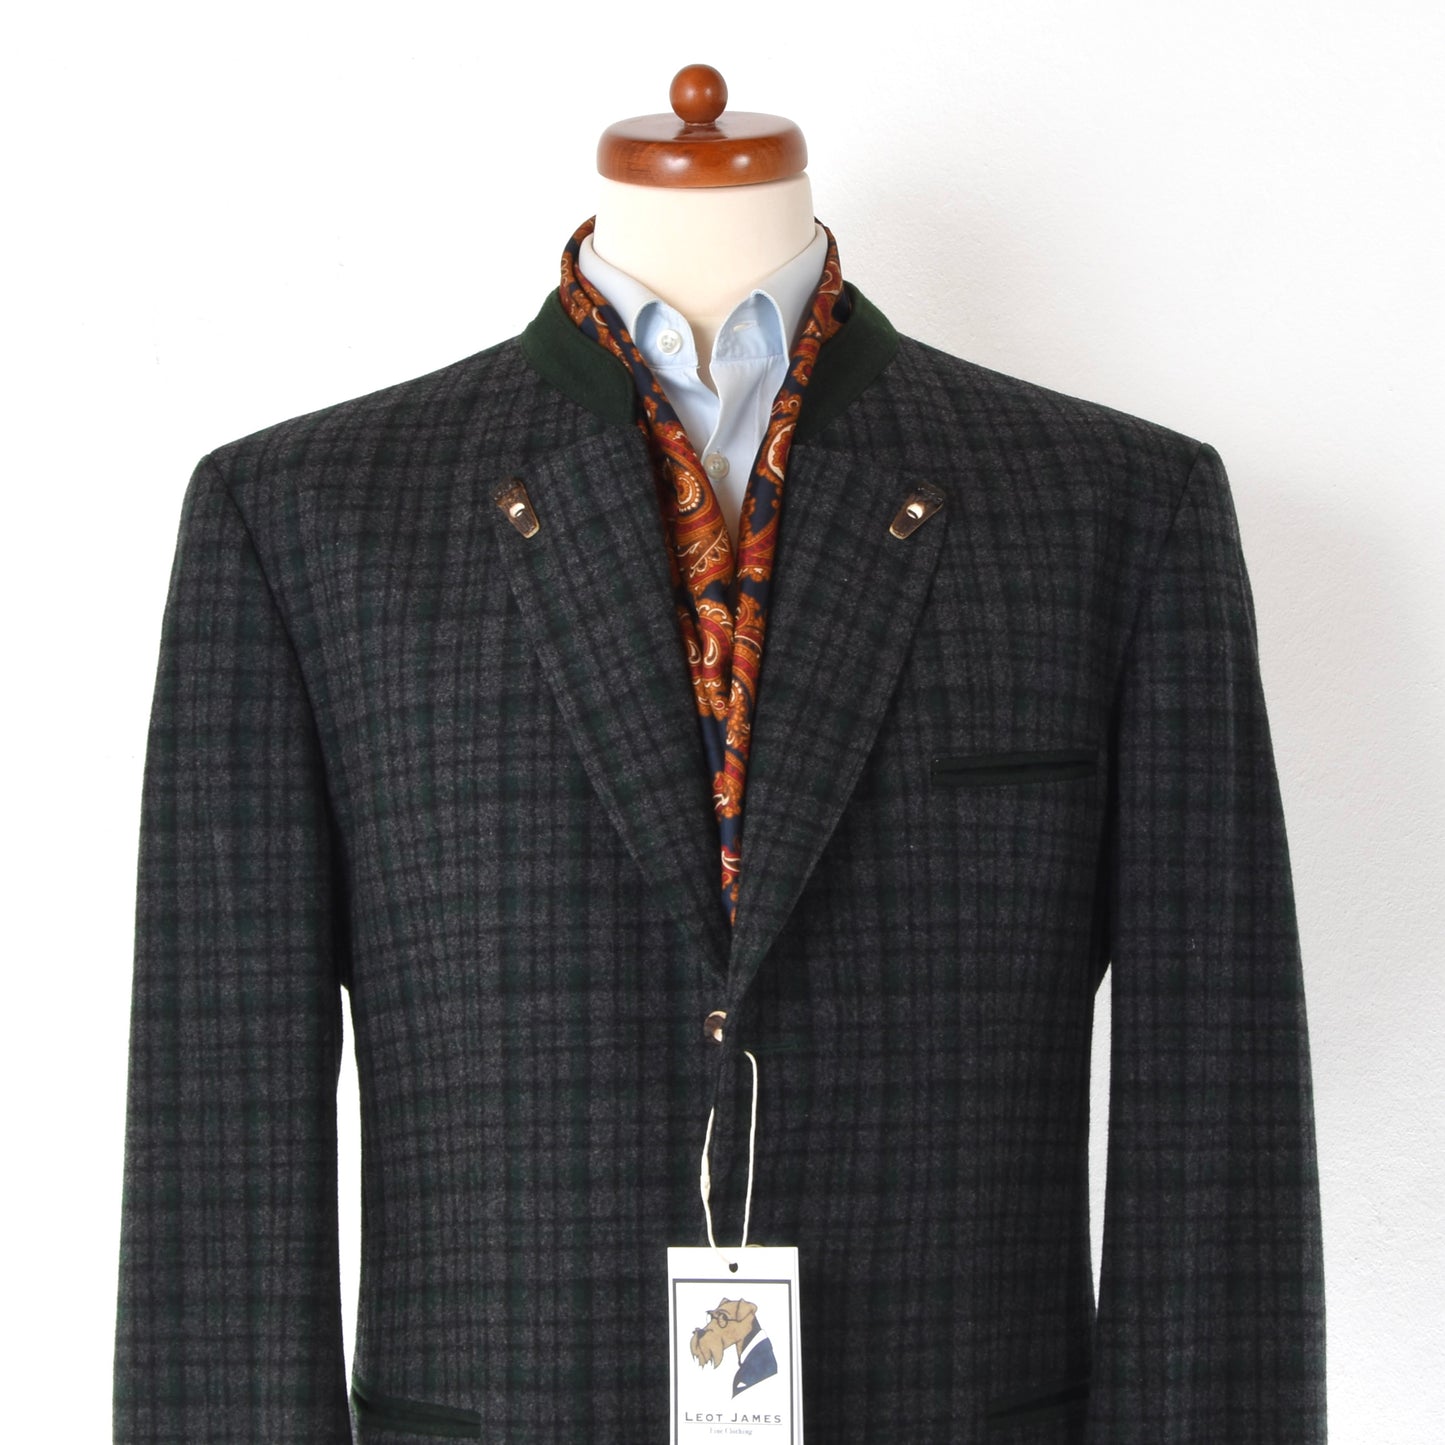 Lodenfrey 100% Wool Janker/Jacket Size 54 - Plaid